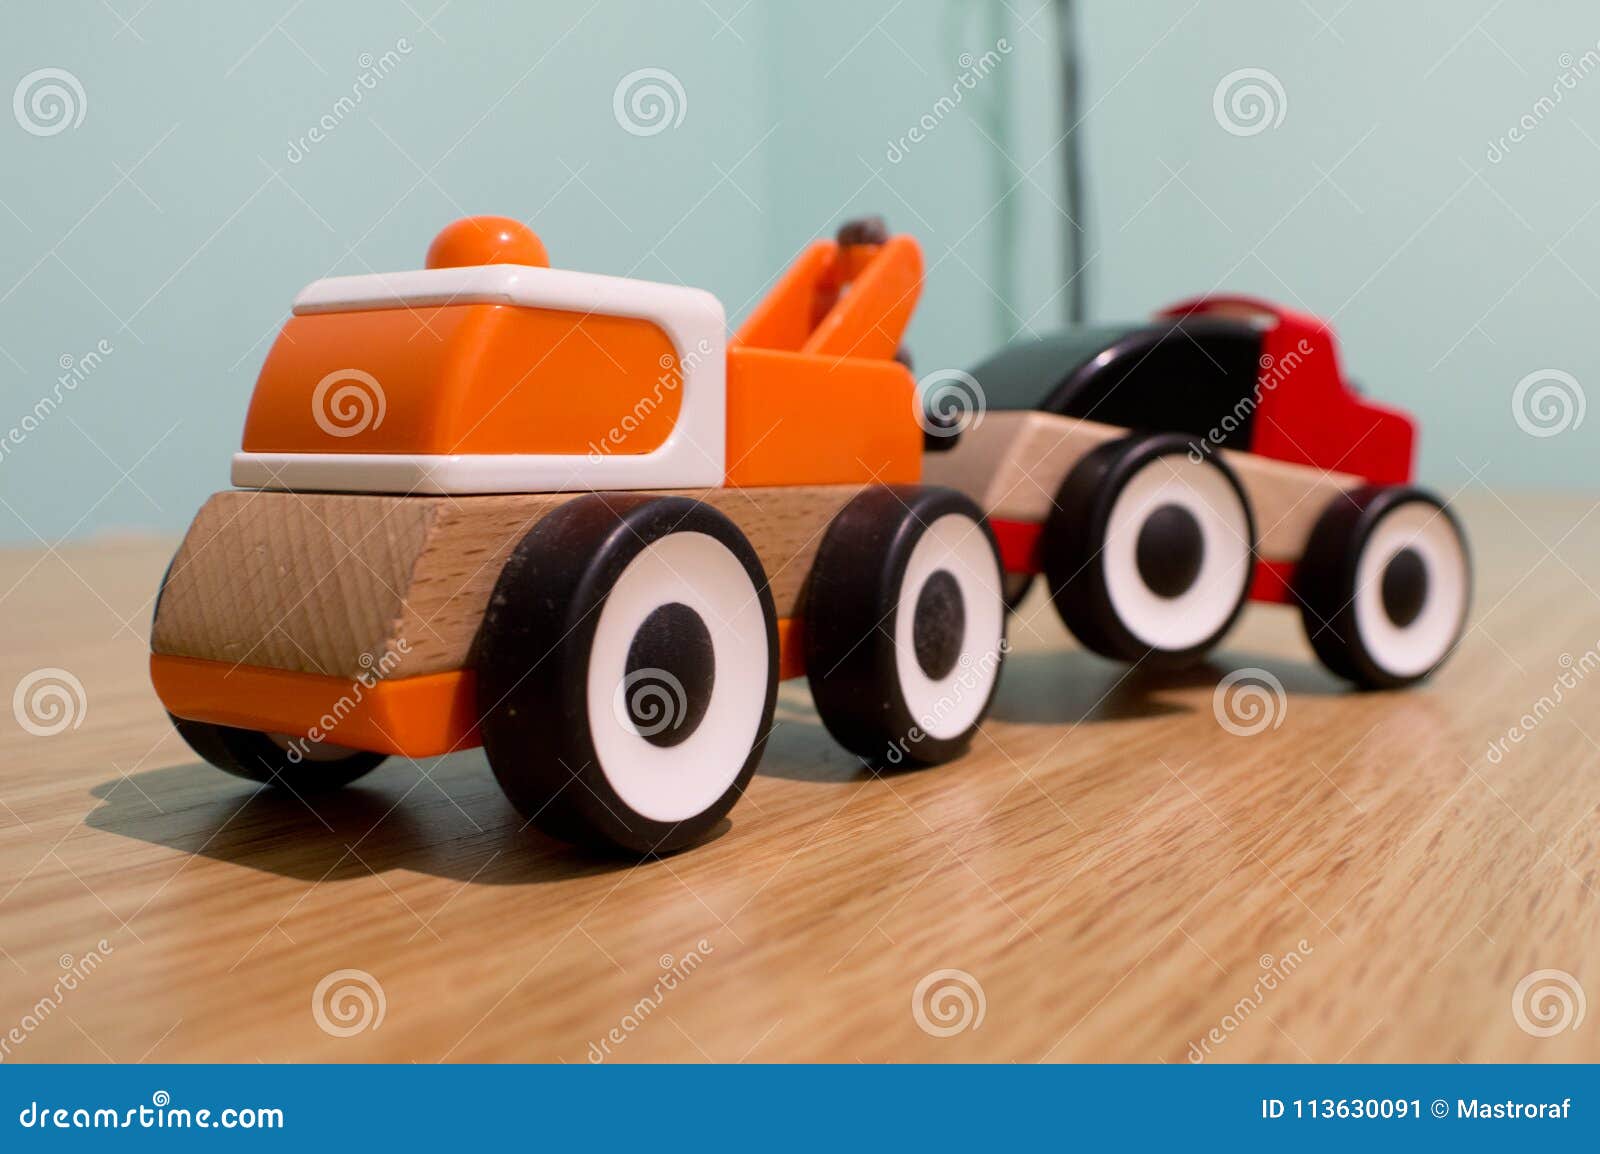 ikea toy truck